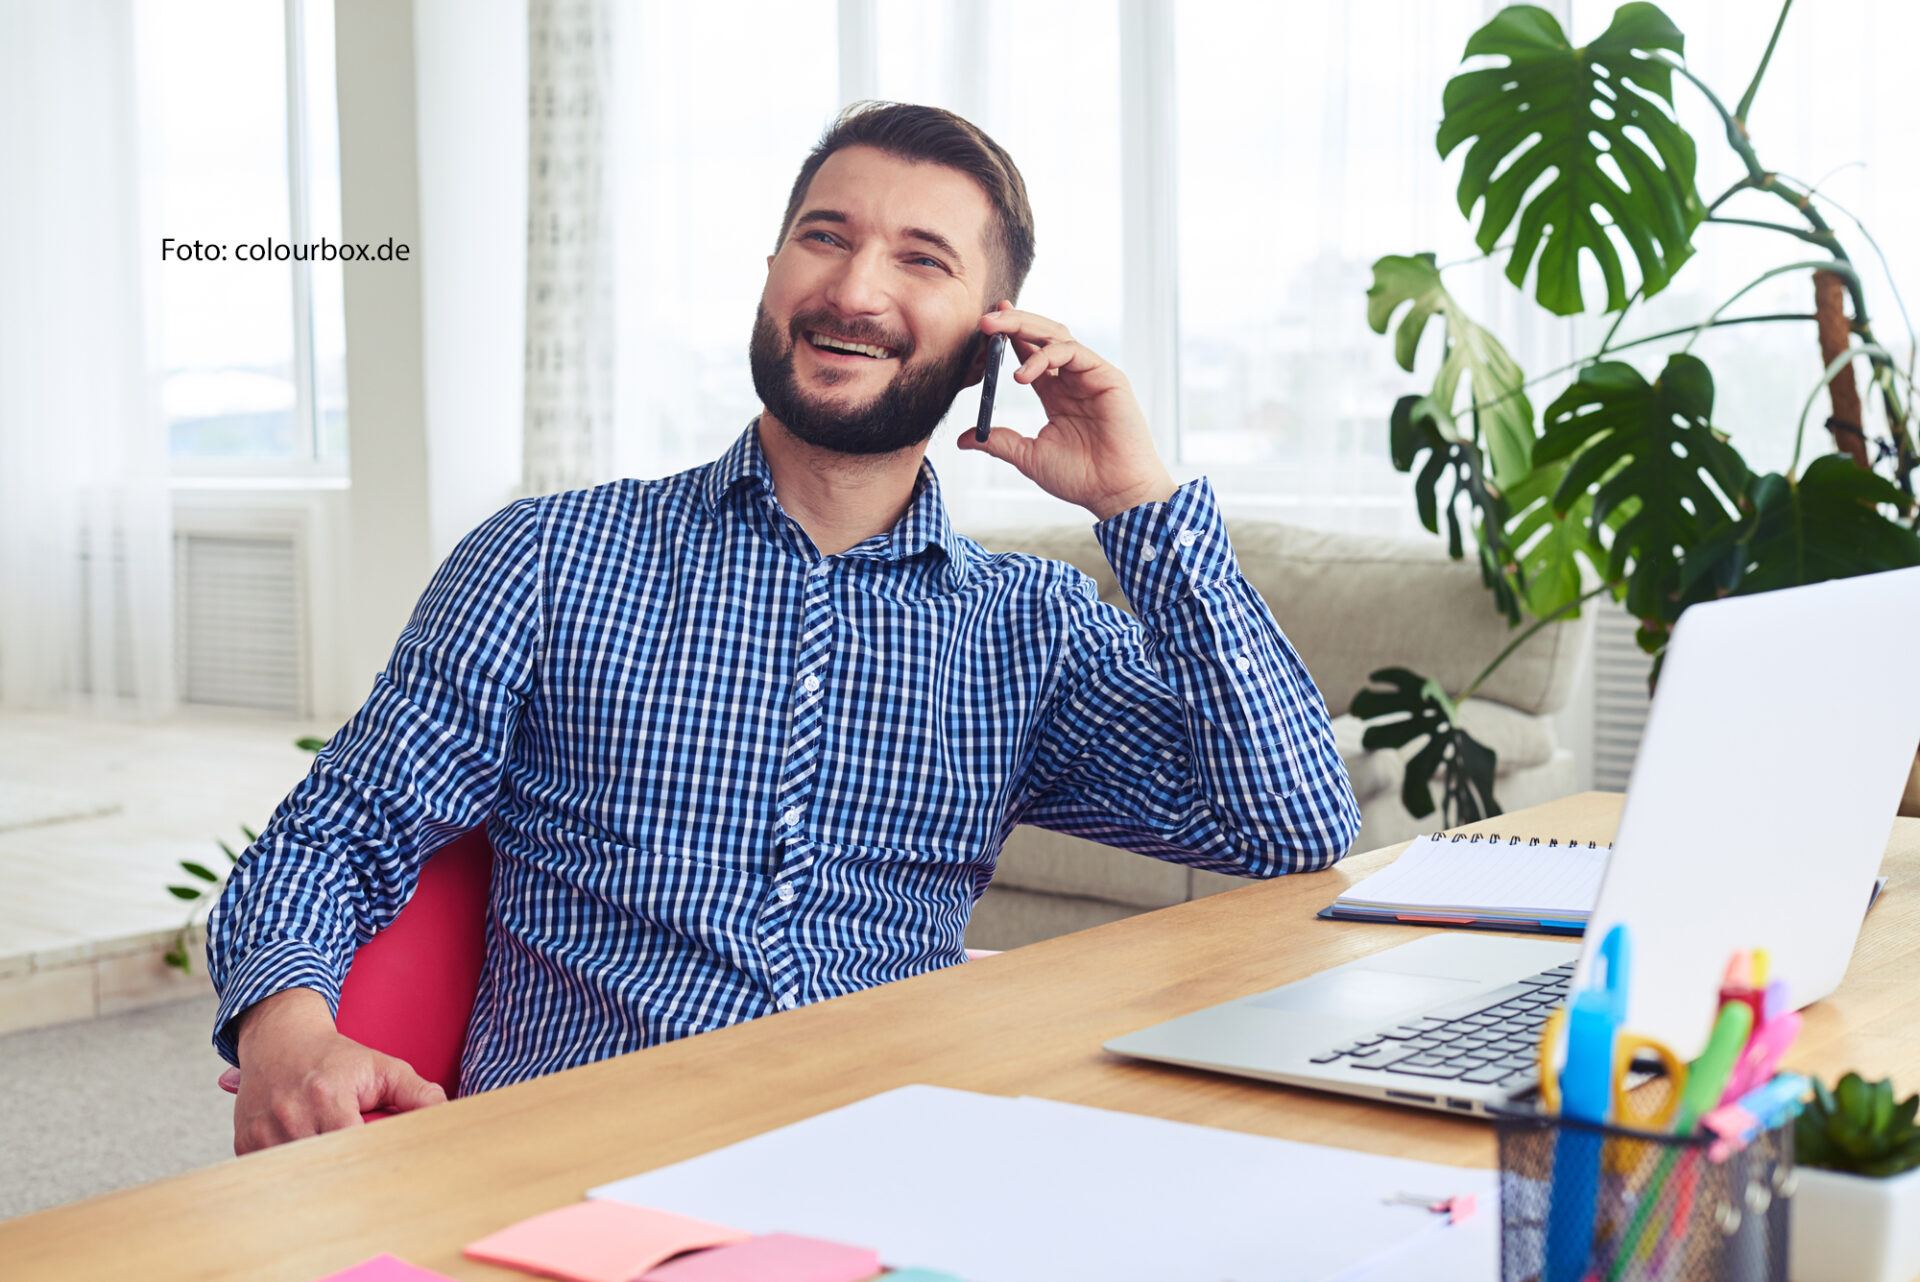 Das Bild zeigt einen bärtigen Mann, vielleicht Mitte 30 Jahre alt, der lachend telefonierend an einem Schreibtisch sitzt. Auf dem Schreibtisch steht ein Notebook.